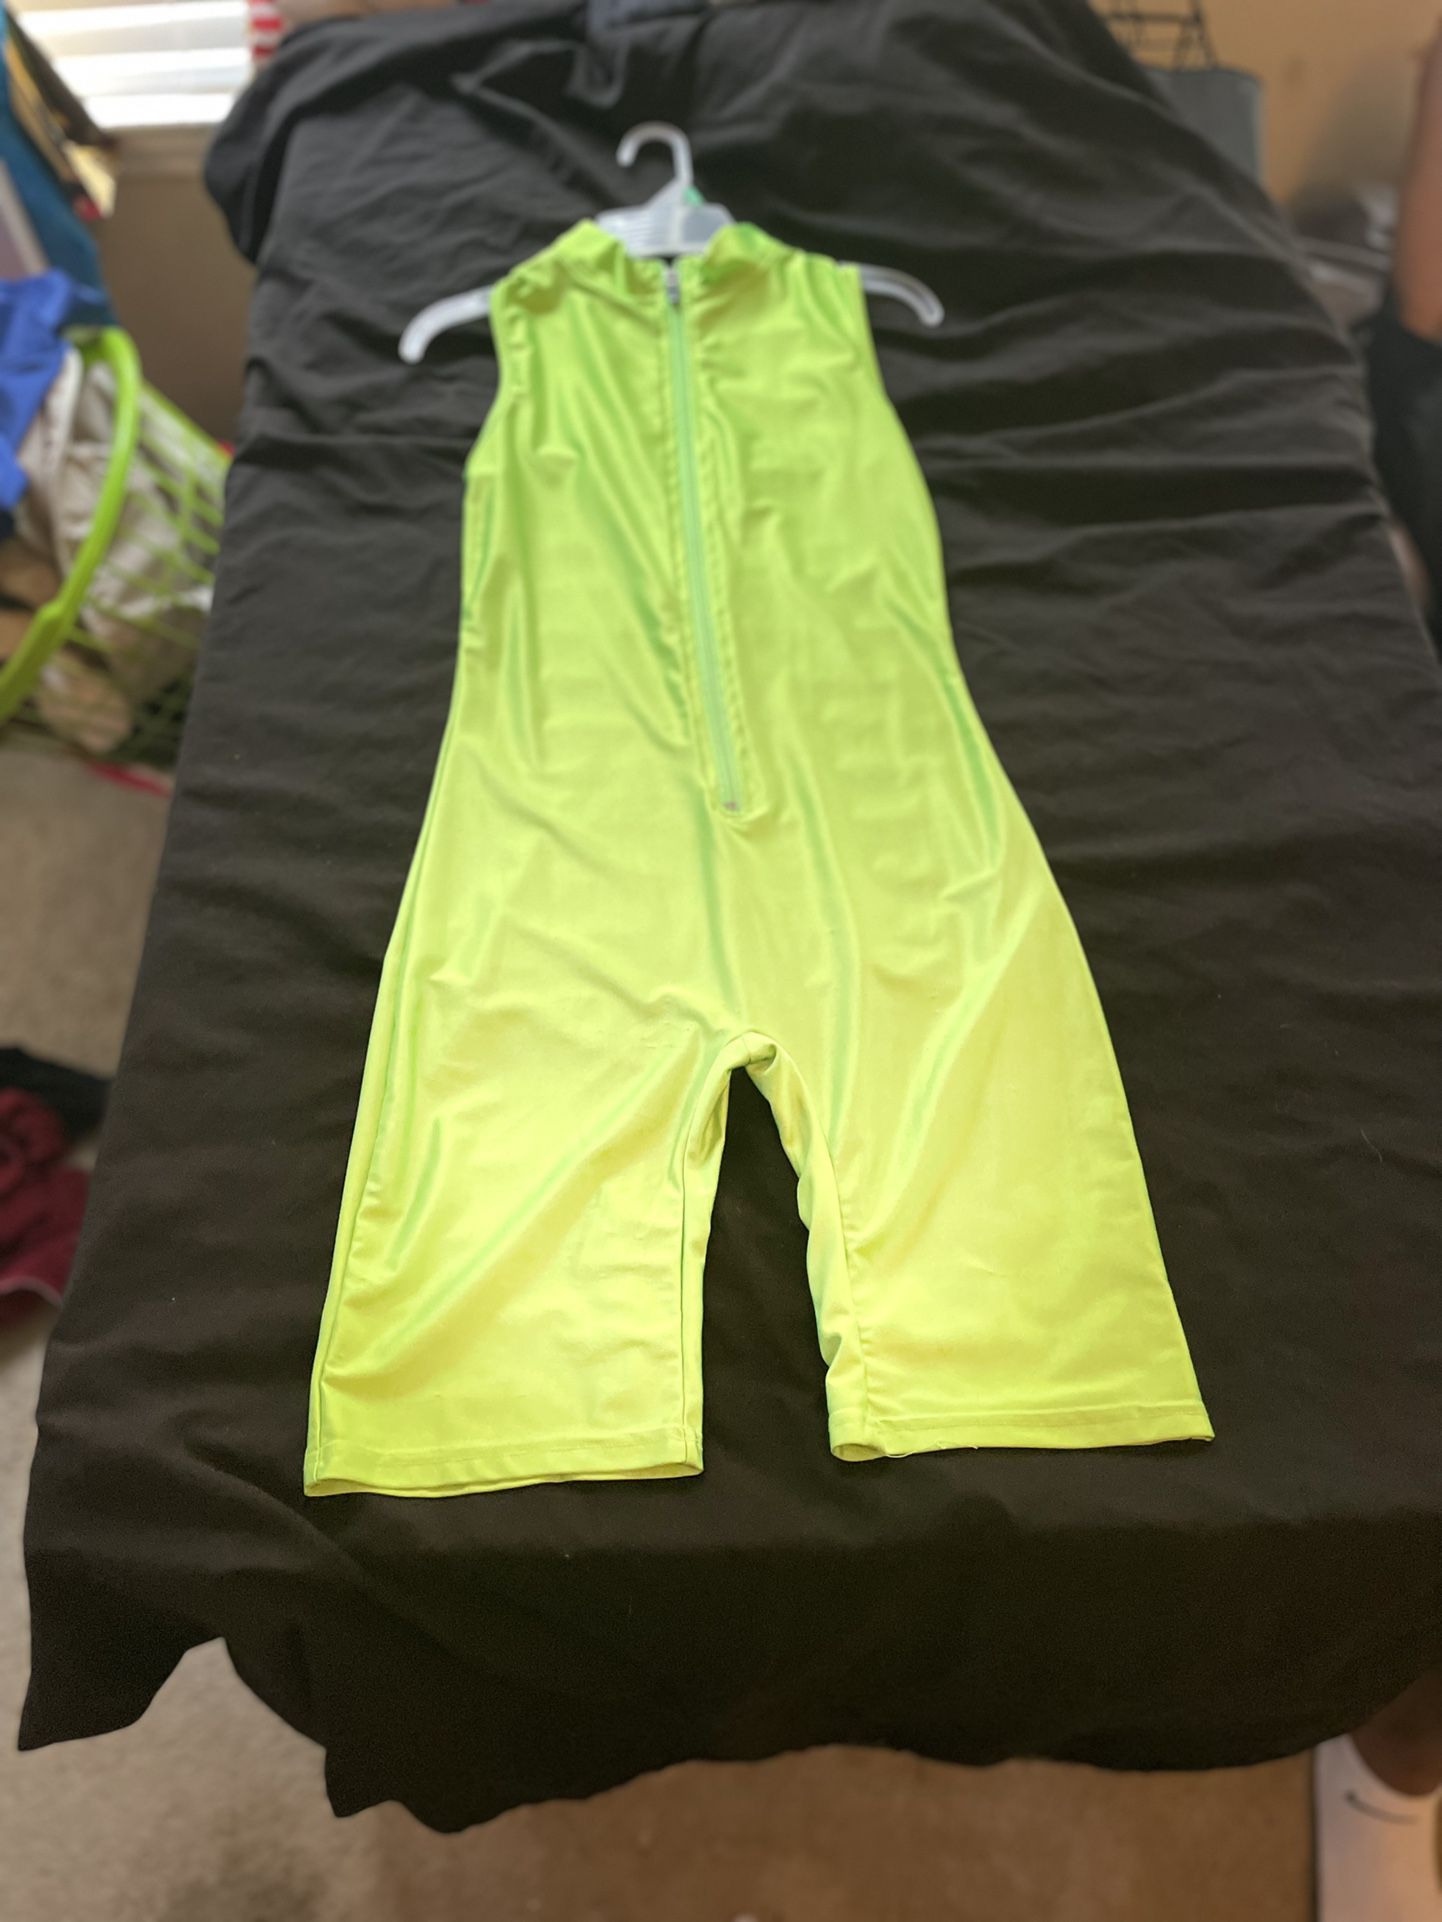 Neon Green Zip Up Biker Short Body Suit, Sz Small